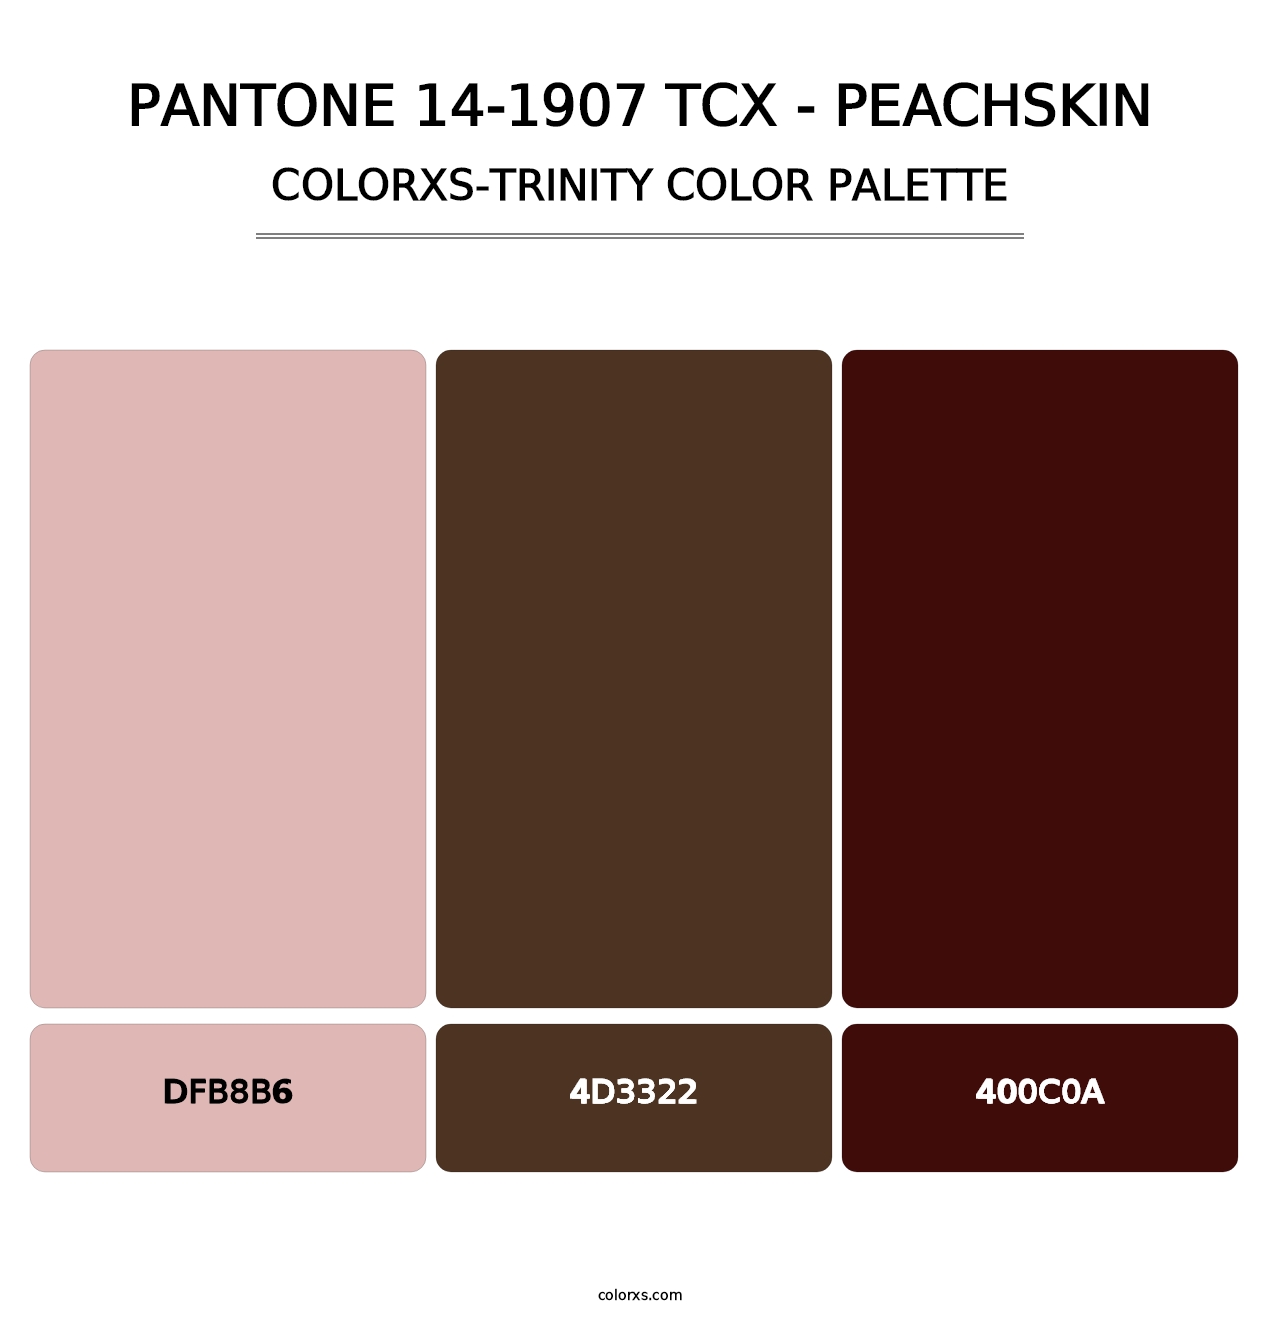 PANTONE 14-1907 TCX - Peachskin - Colorxs Trinity Palette